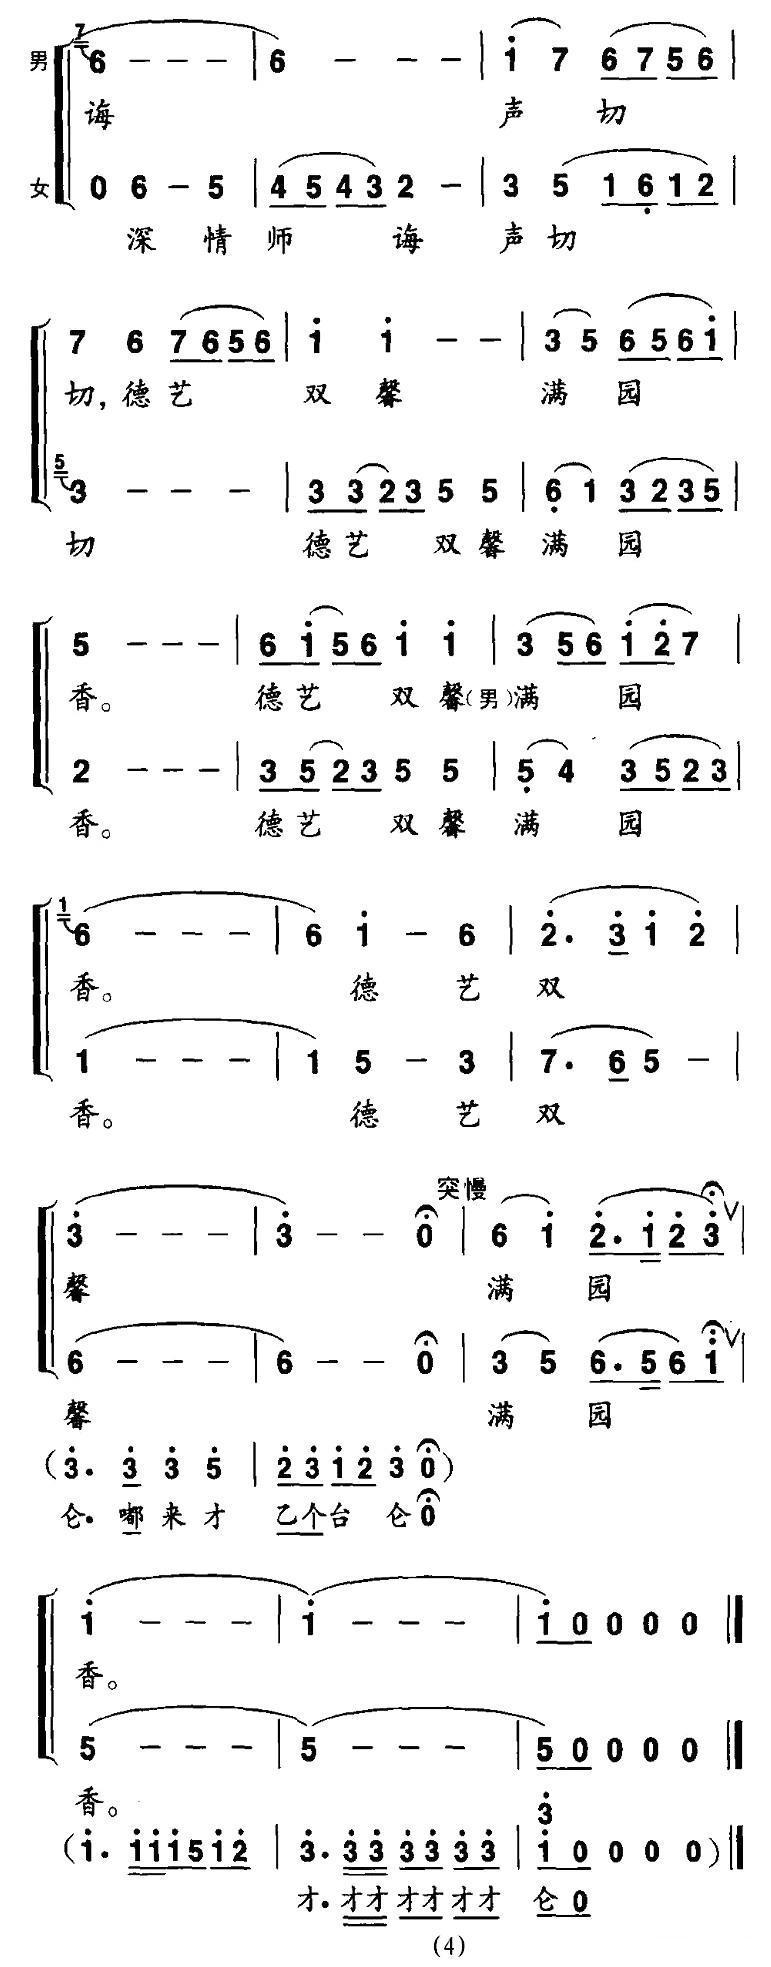 戏苑春芽竞芬芳（戏曲歌舞联唱）合唱曲谱（图4）